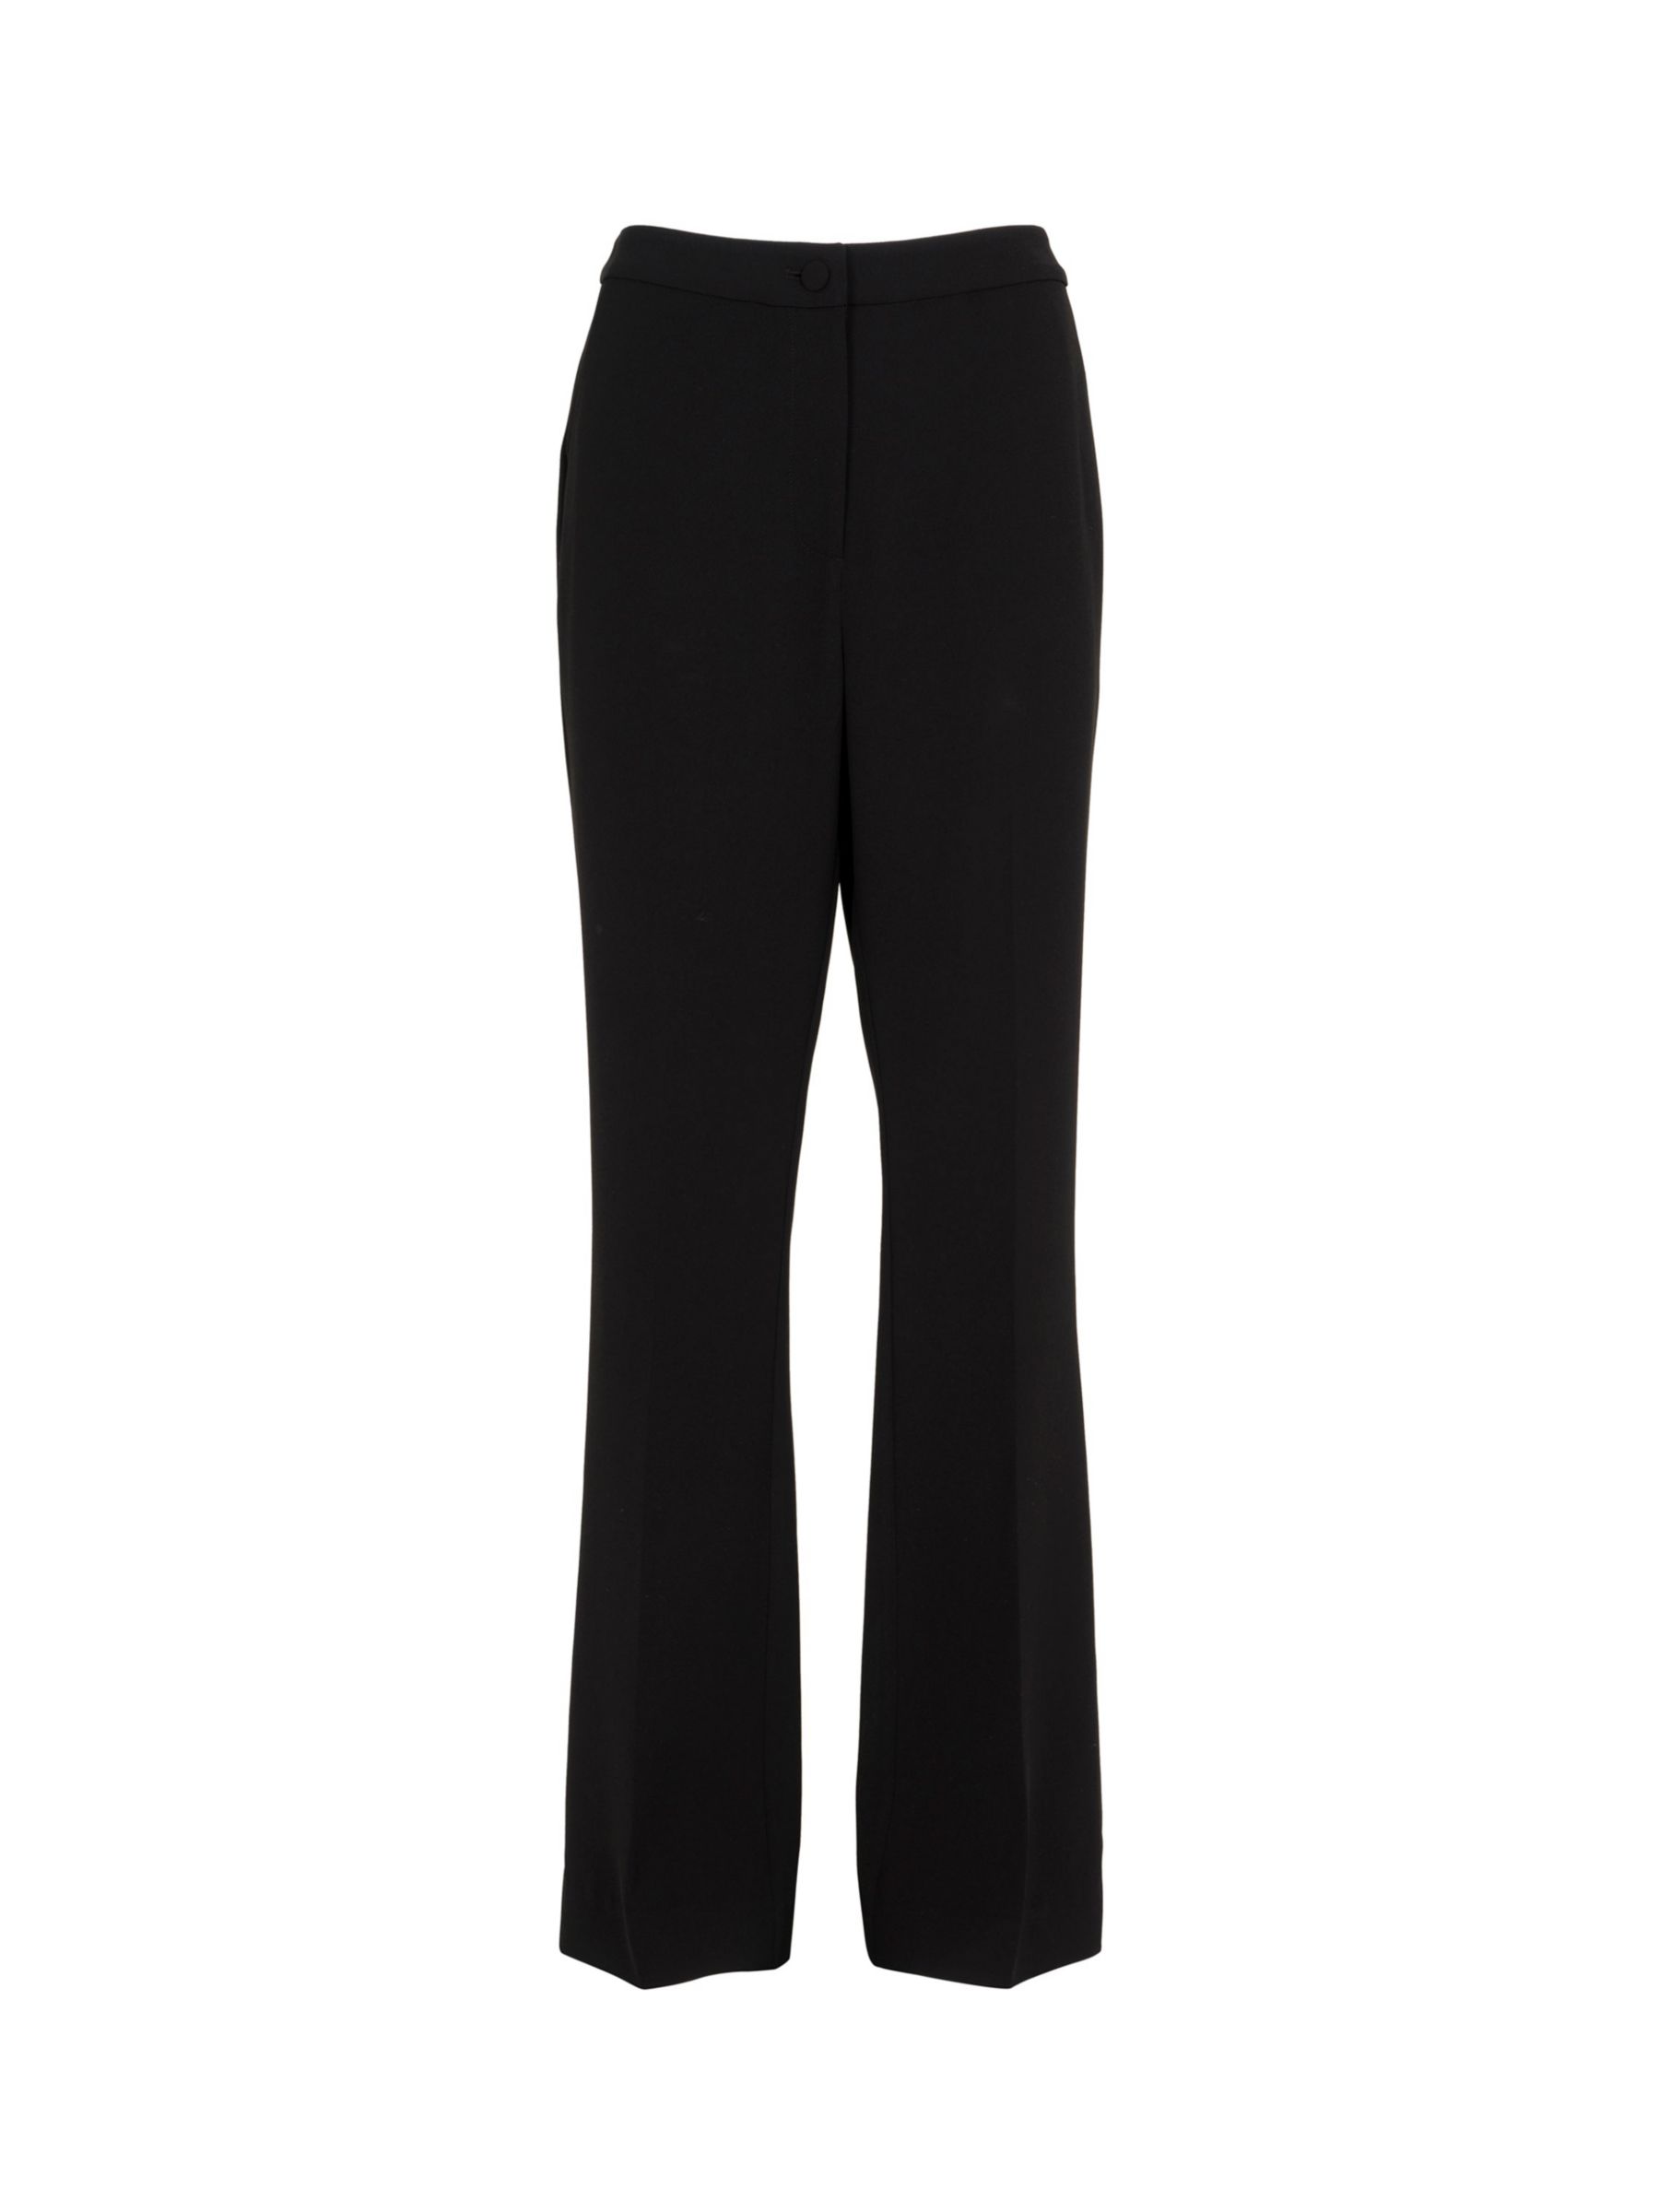 Mint Velvet Tailored Flared Trousers, Black at John Lewis & Partners